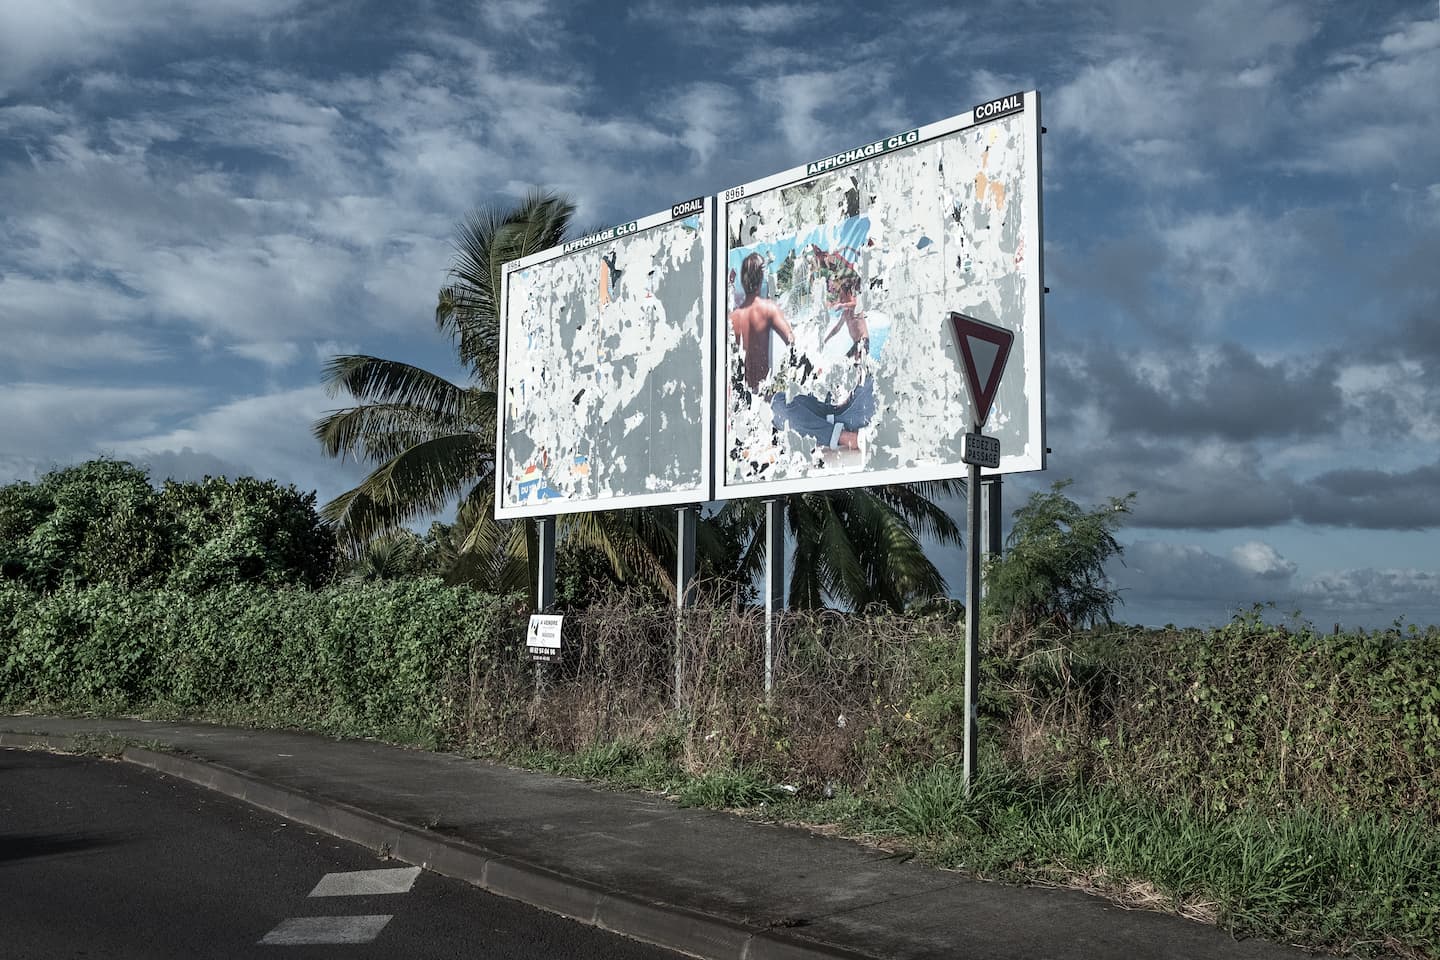 Edgar Marsy Série Dernière Campagne / La Ravine des cabris, 2020. Photographie, dimensions variables. Achat à l’artiste. Collection Frac Réunion. © Edgar Marsy